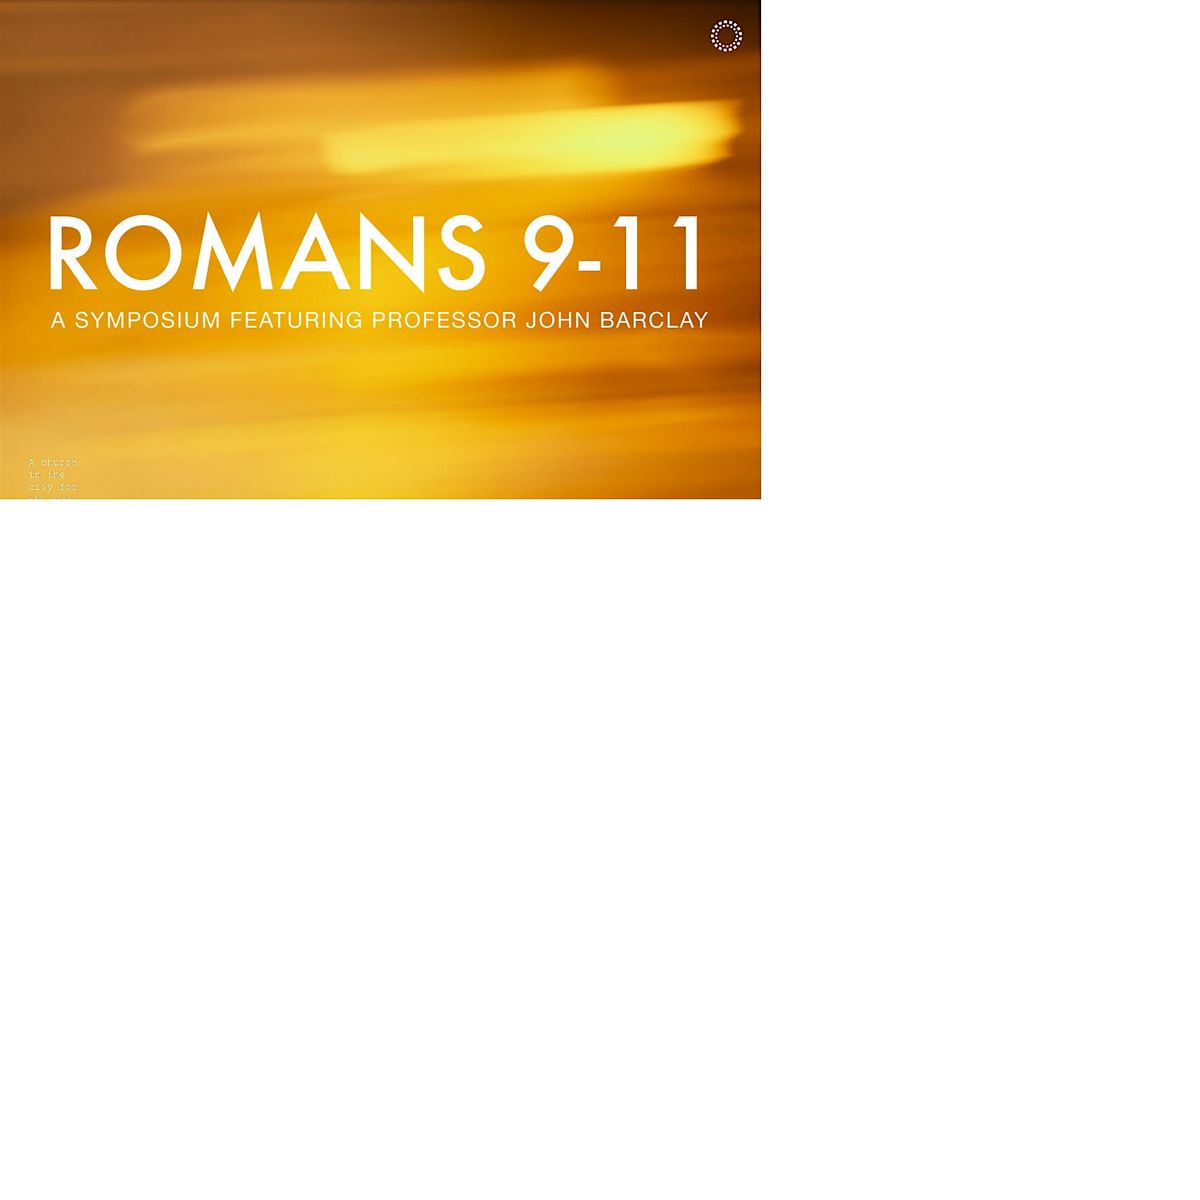 Romans 9-11 Symposium